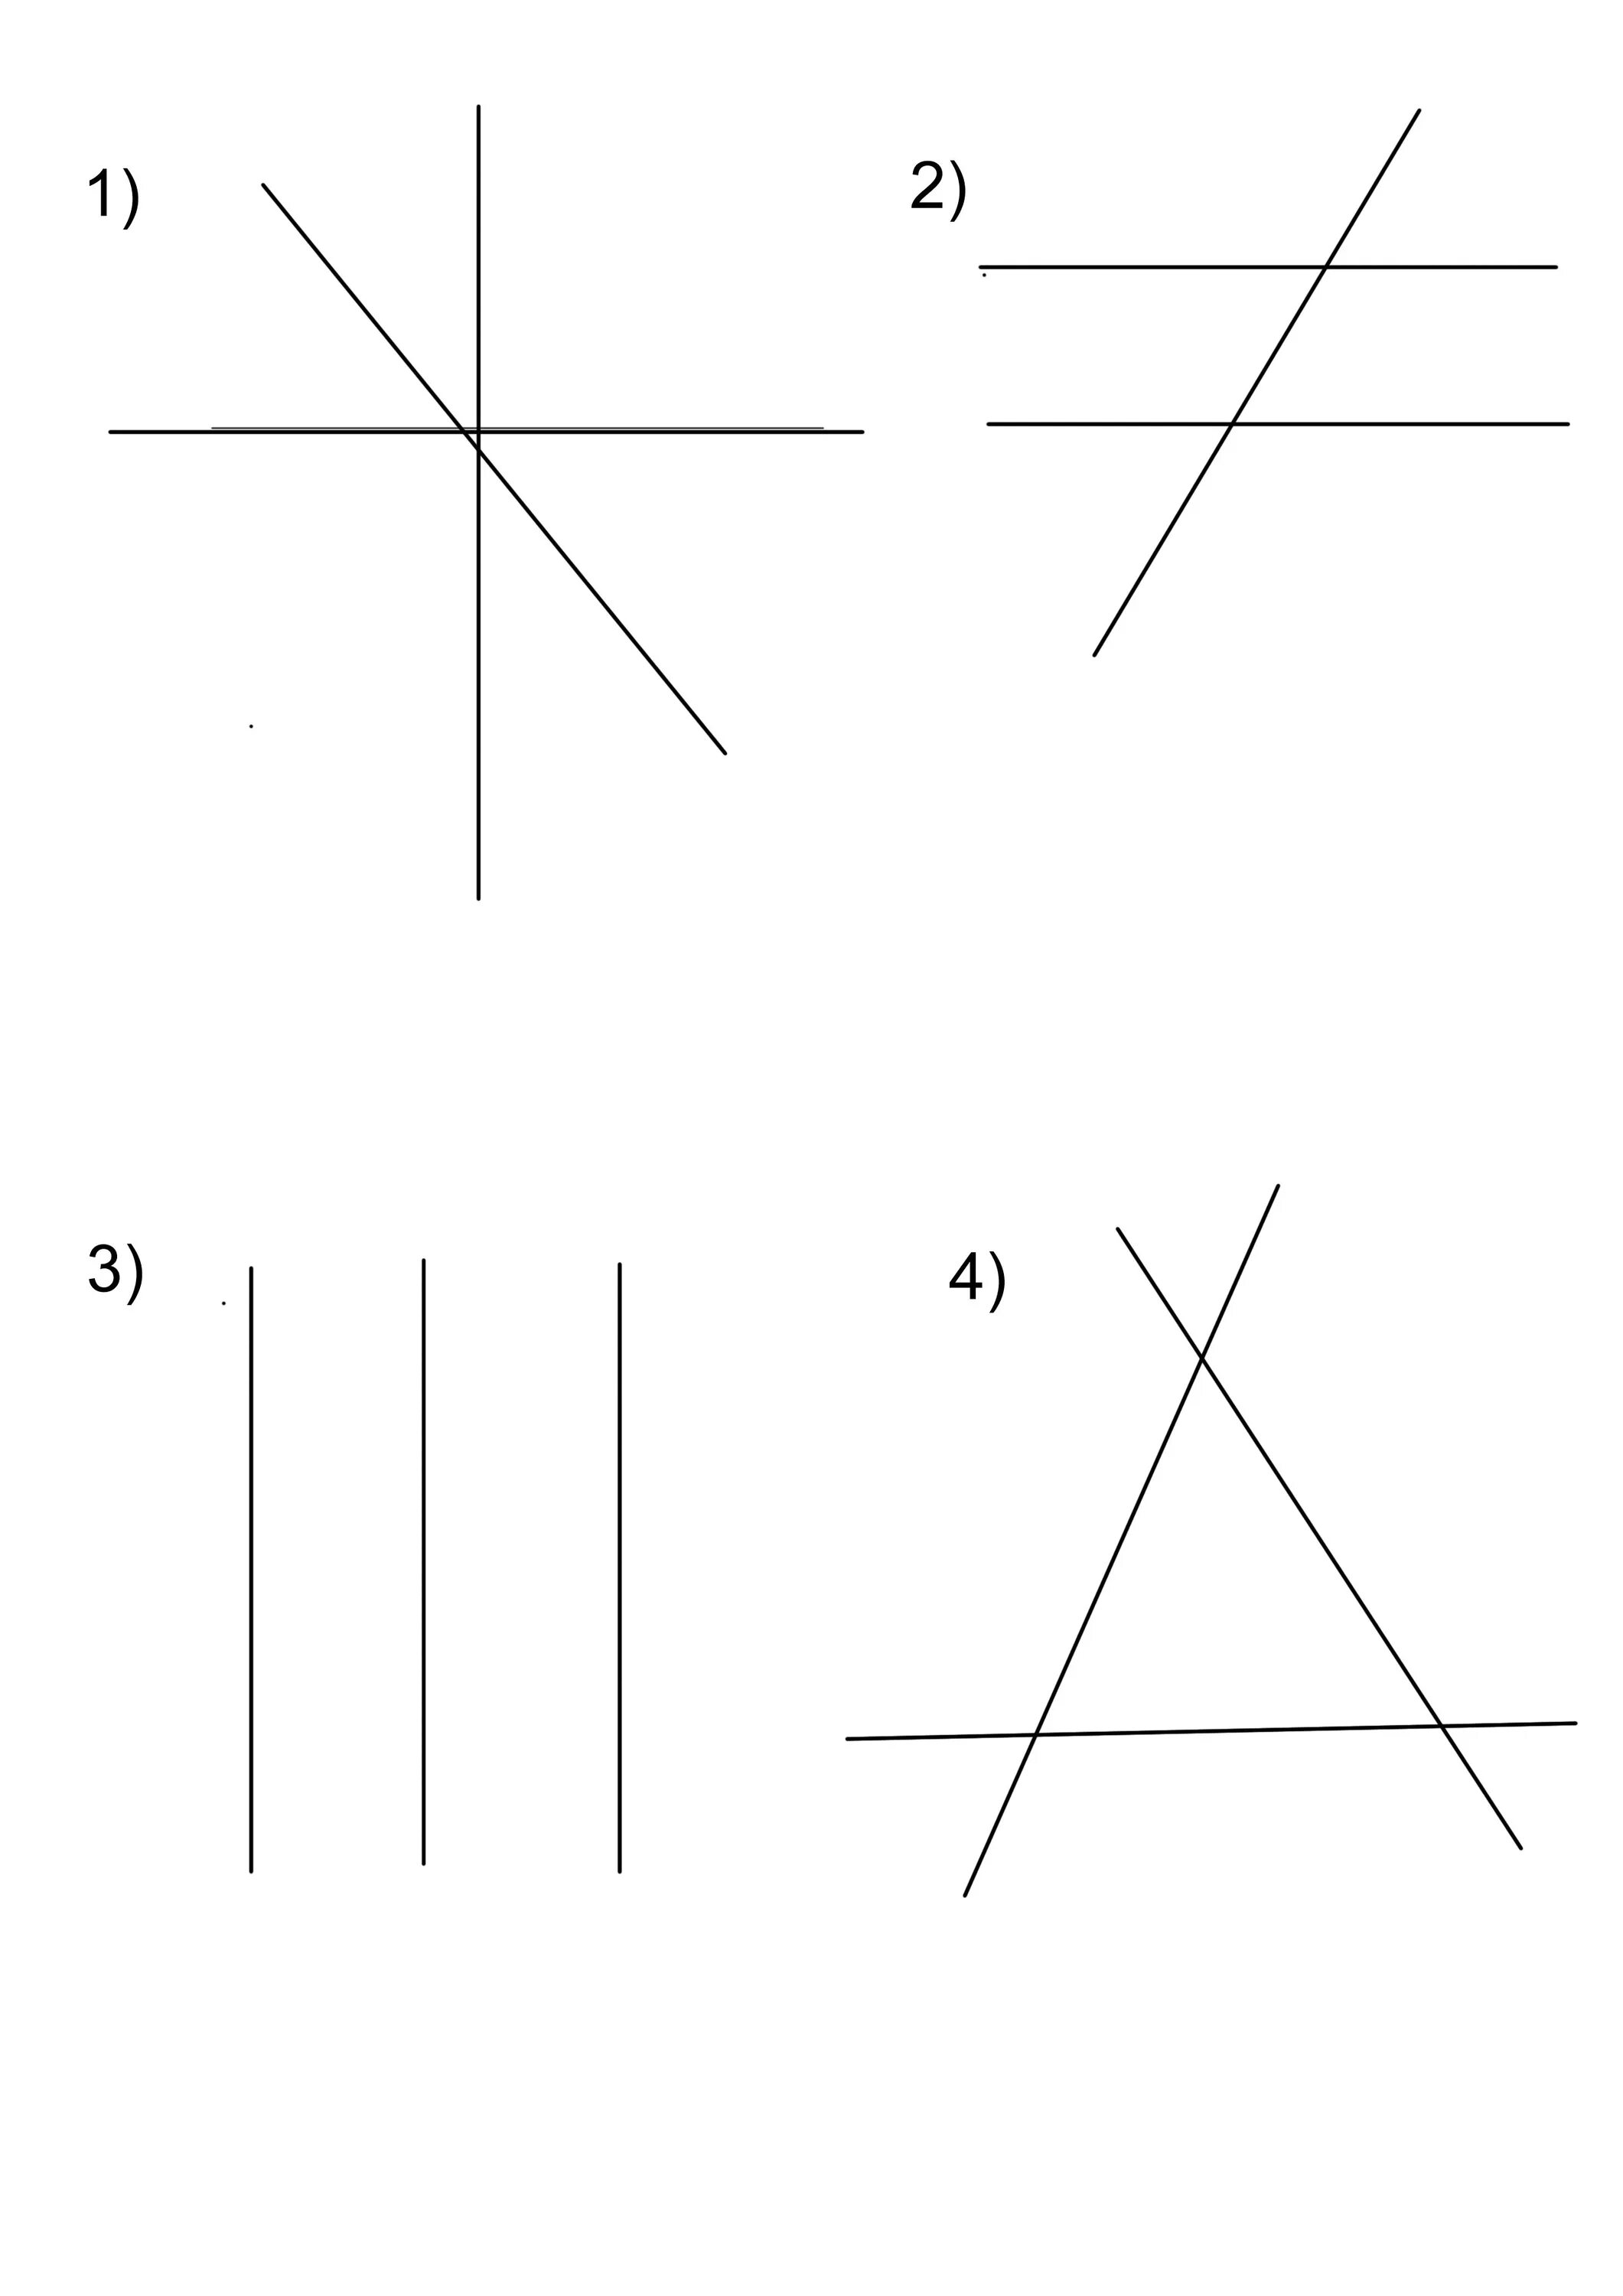 Три прямые попарно. Взаимное расположение трех прямых. Случаи взаимного расположения трех прямых на плоскости. Три случая расположения прямых в плоскости. Пересекающиеся линии.